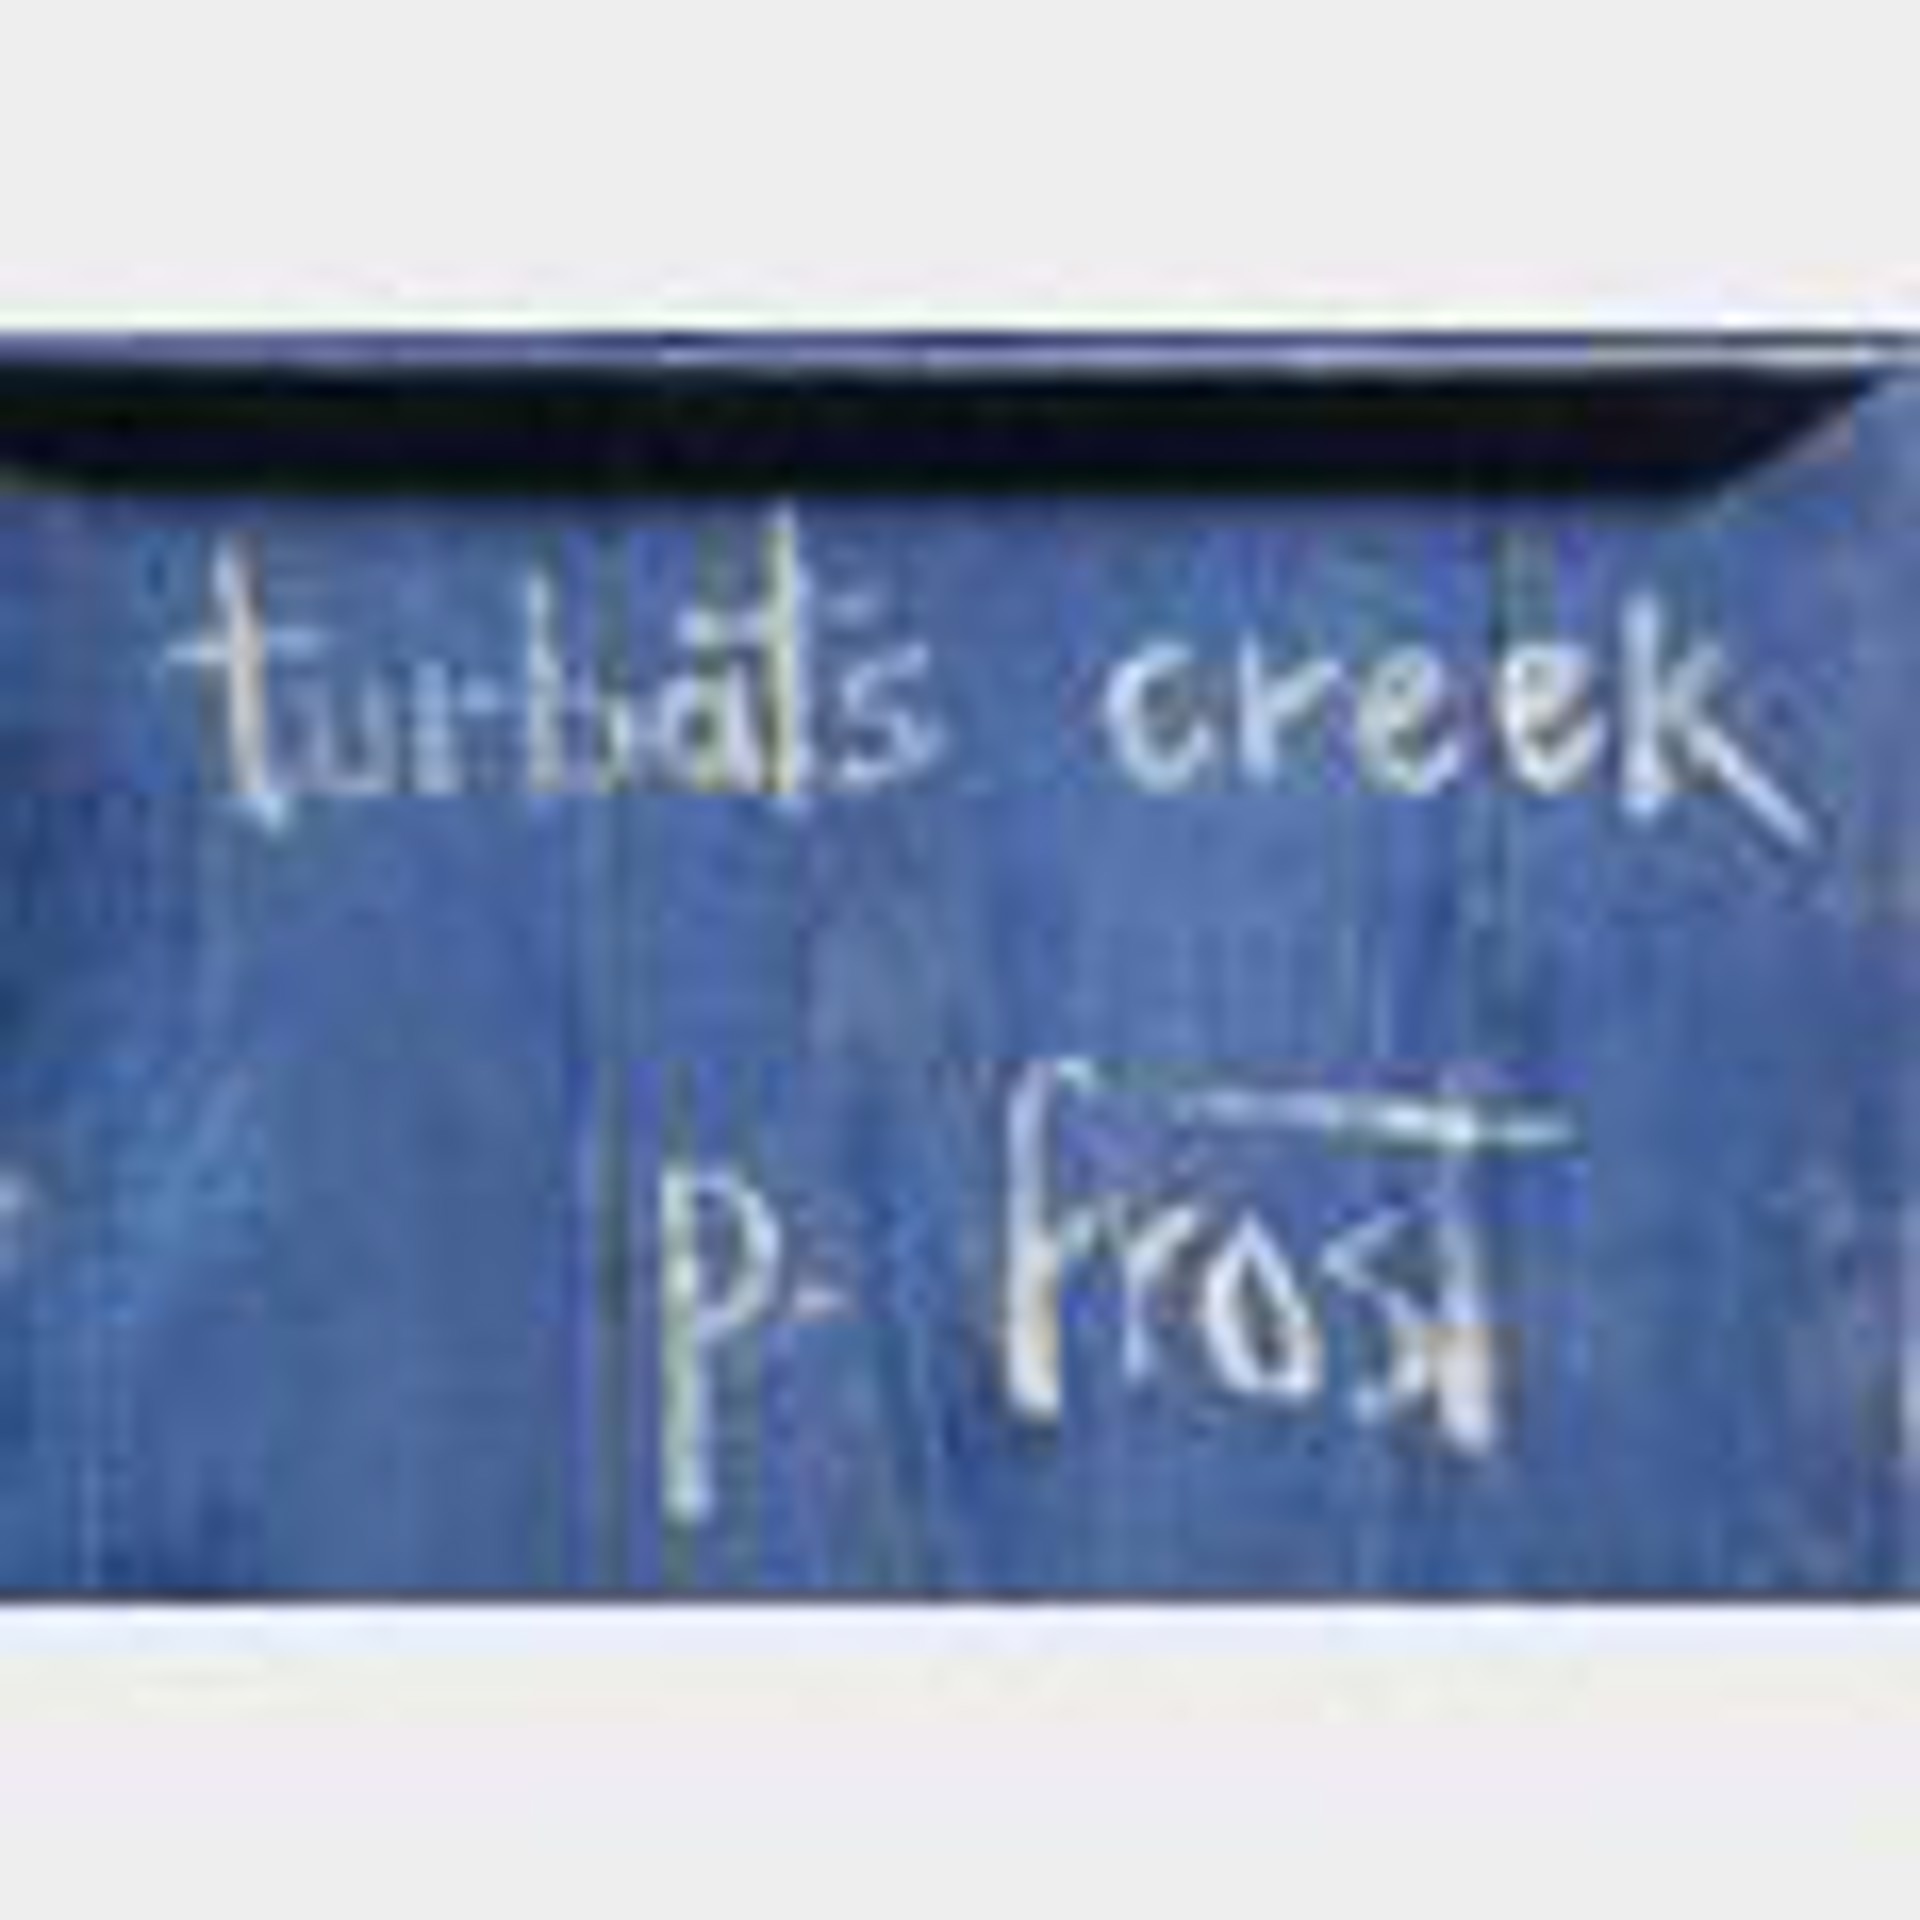 Turbats Creek Doors by P. FROST